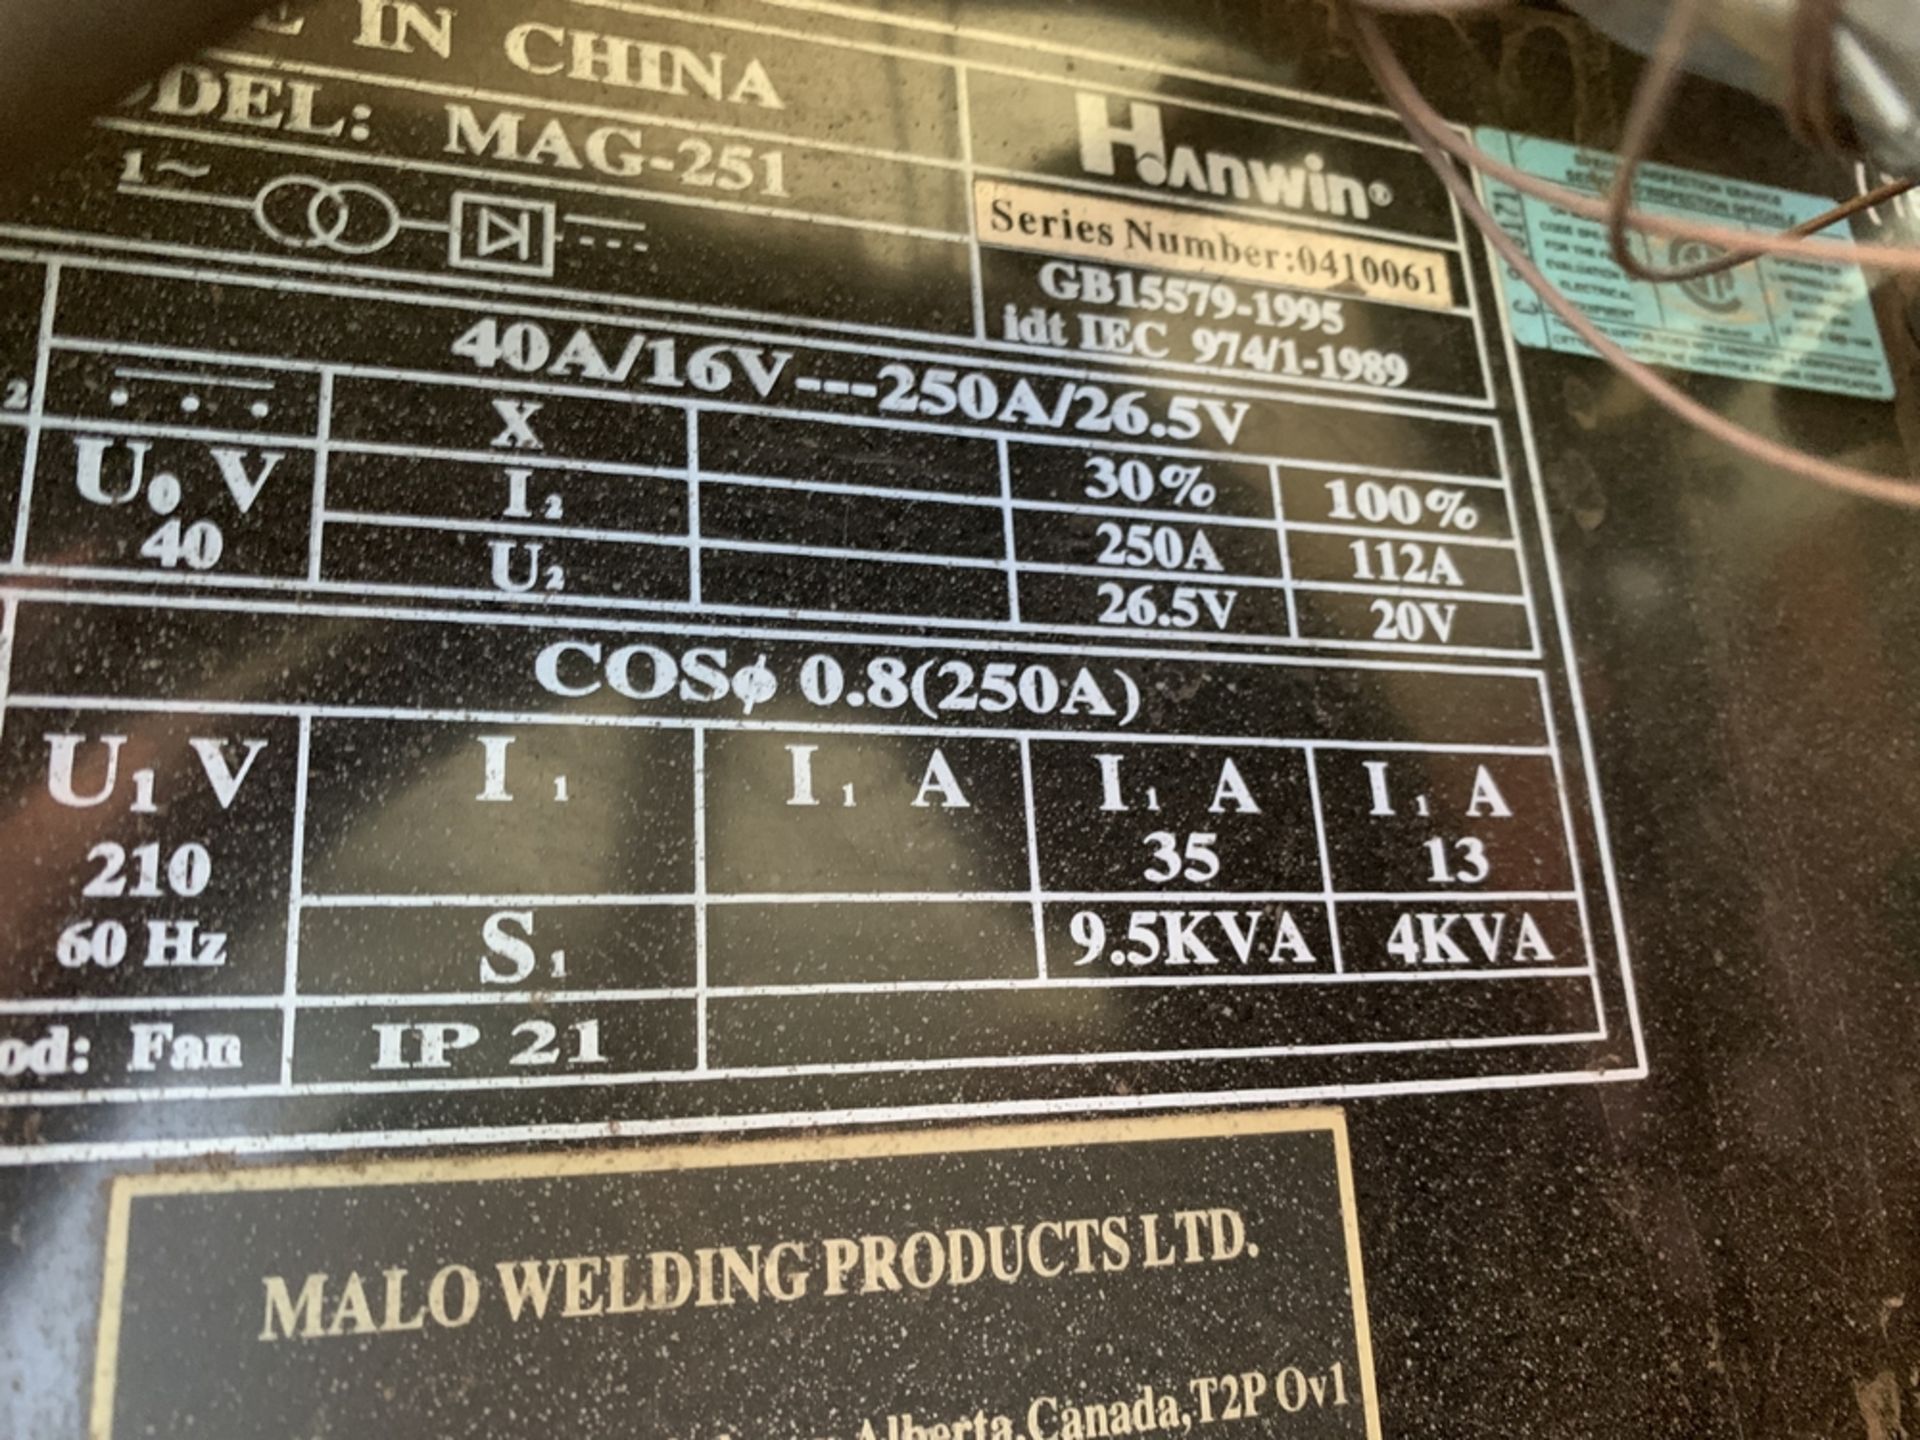 HANWIN MAG-251 welder s/n 410061 - Image 2 of 2